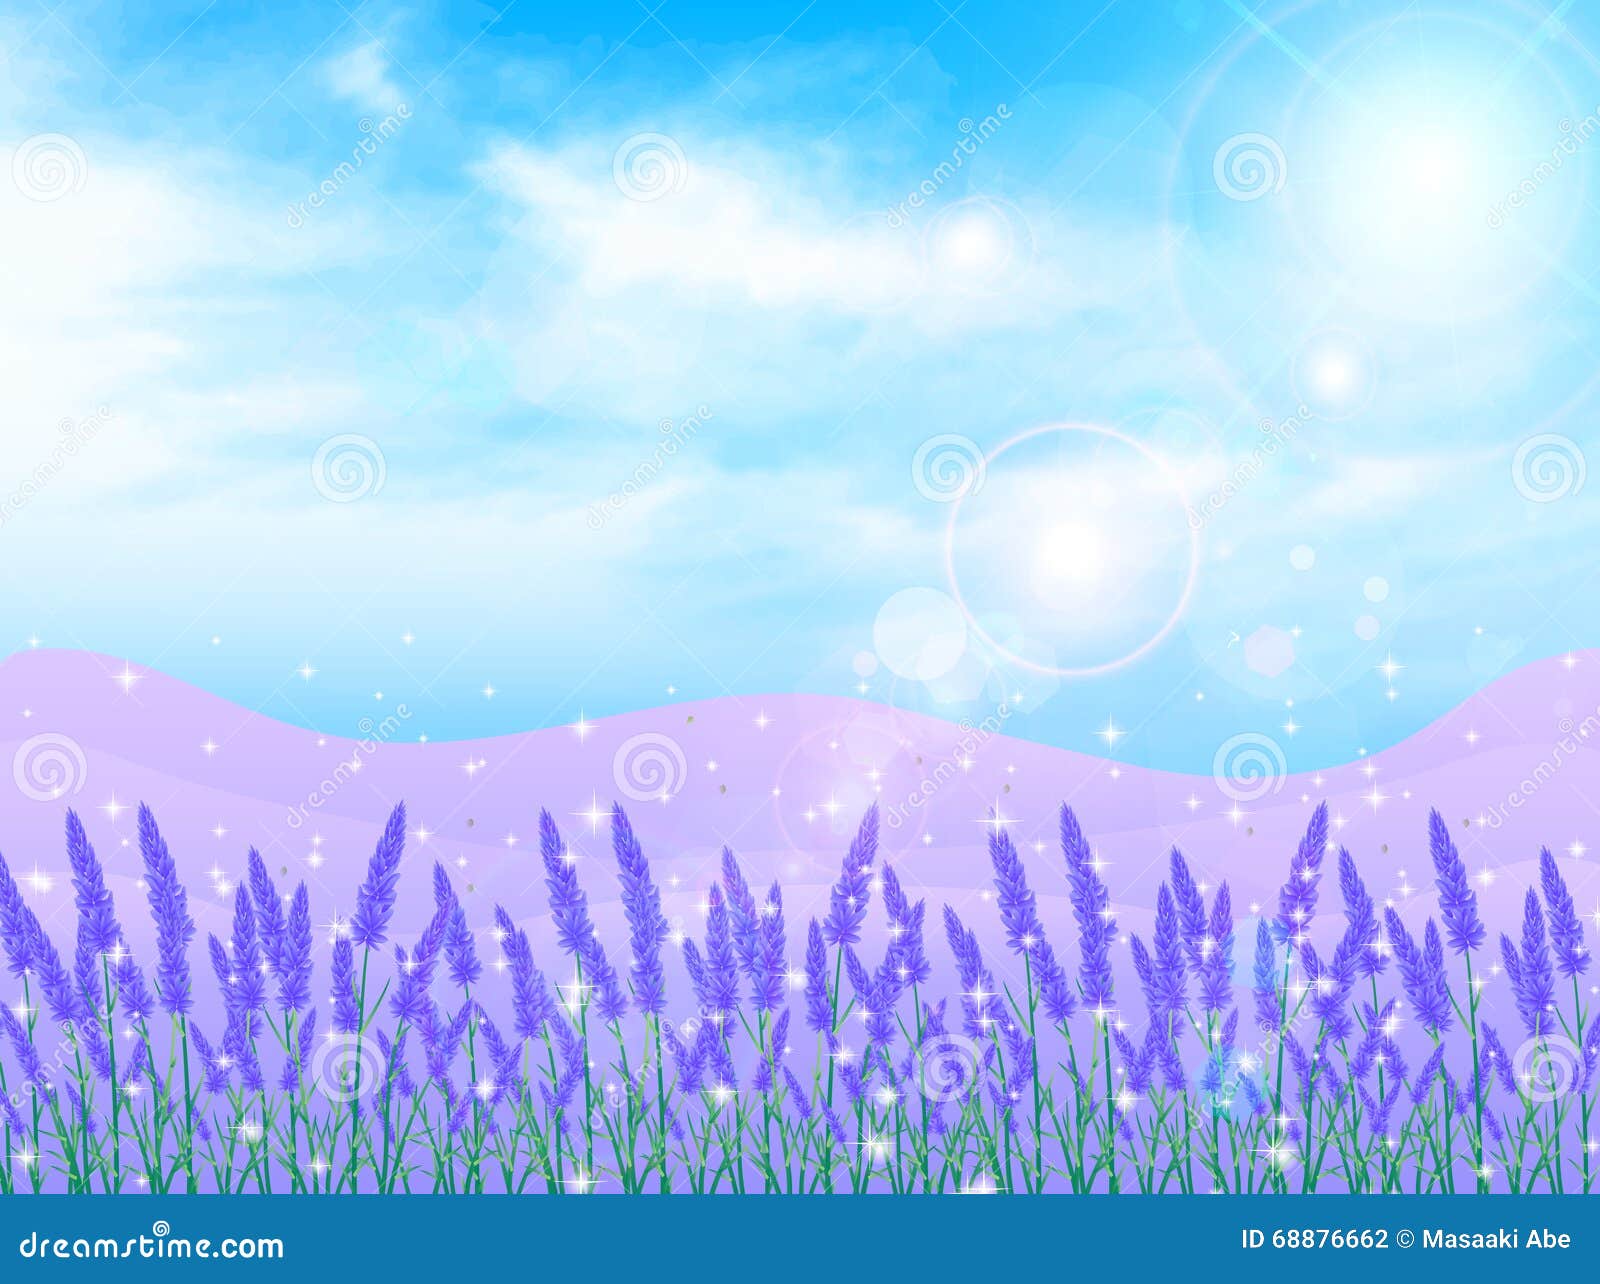 淡紫色花风景背景库存例证 插画包括有北海道 横向 淡紫色 背包 晒裂 材料 夏天 及早